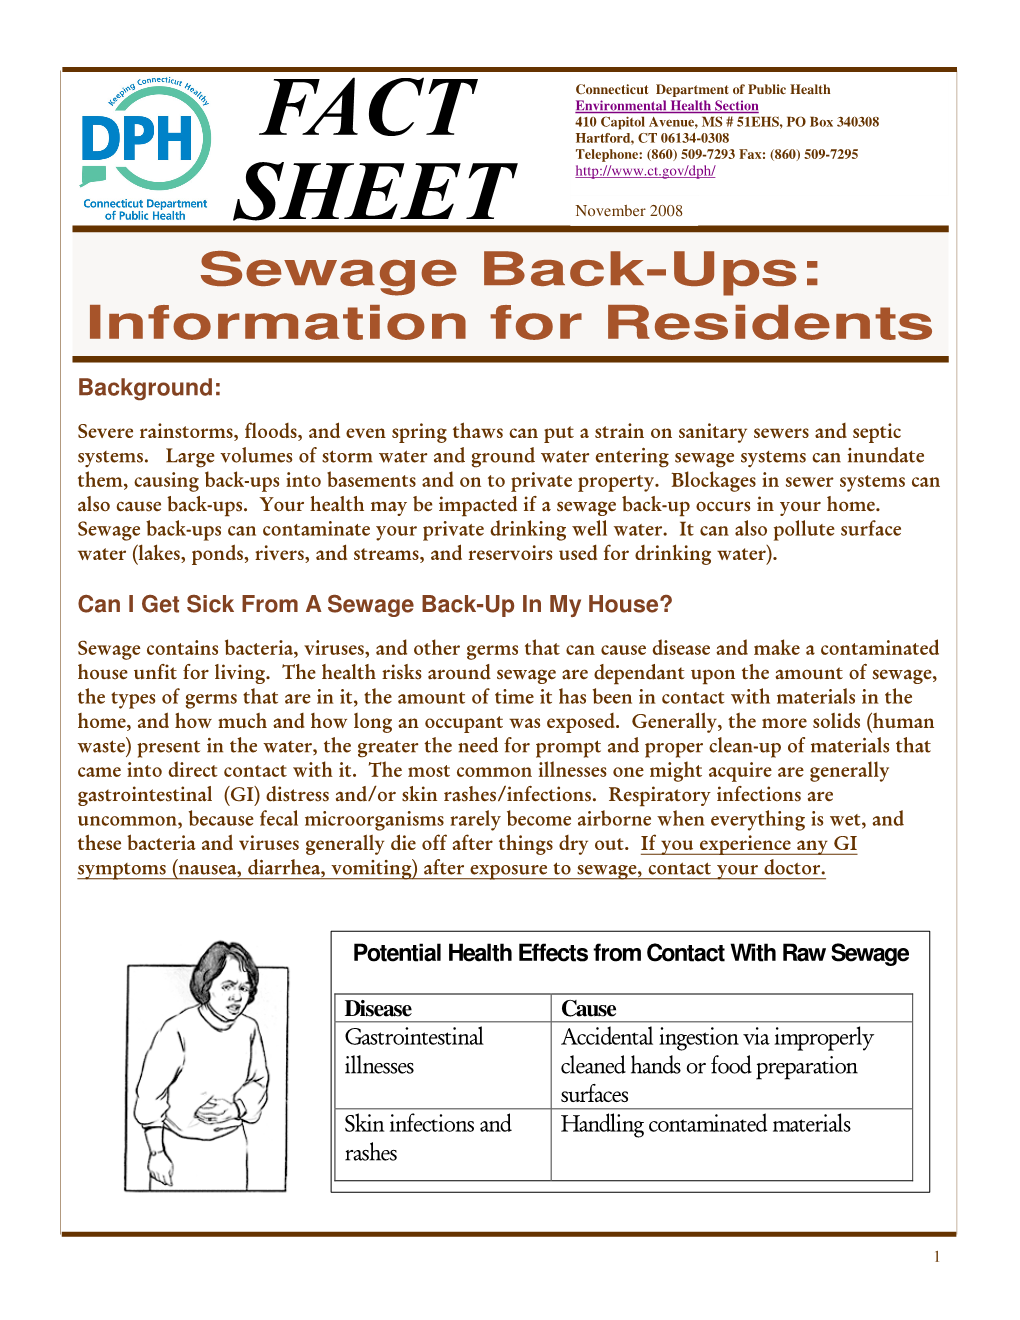 Sewage Back-Ups: Information for Residents